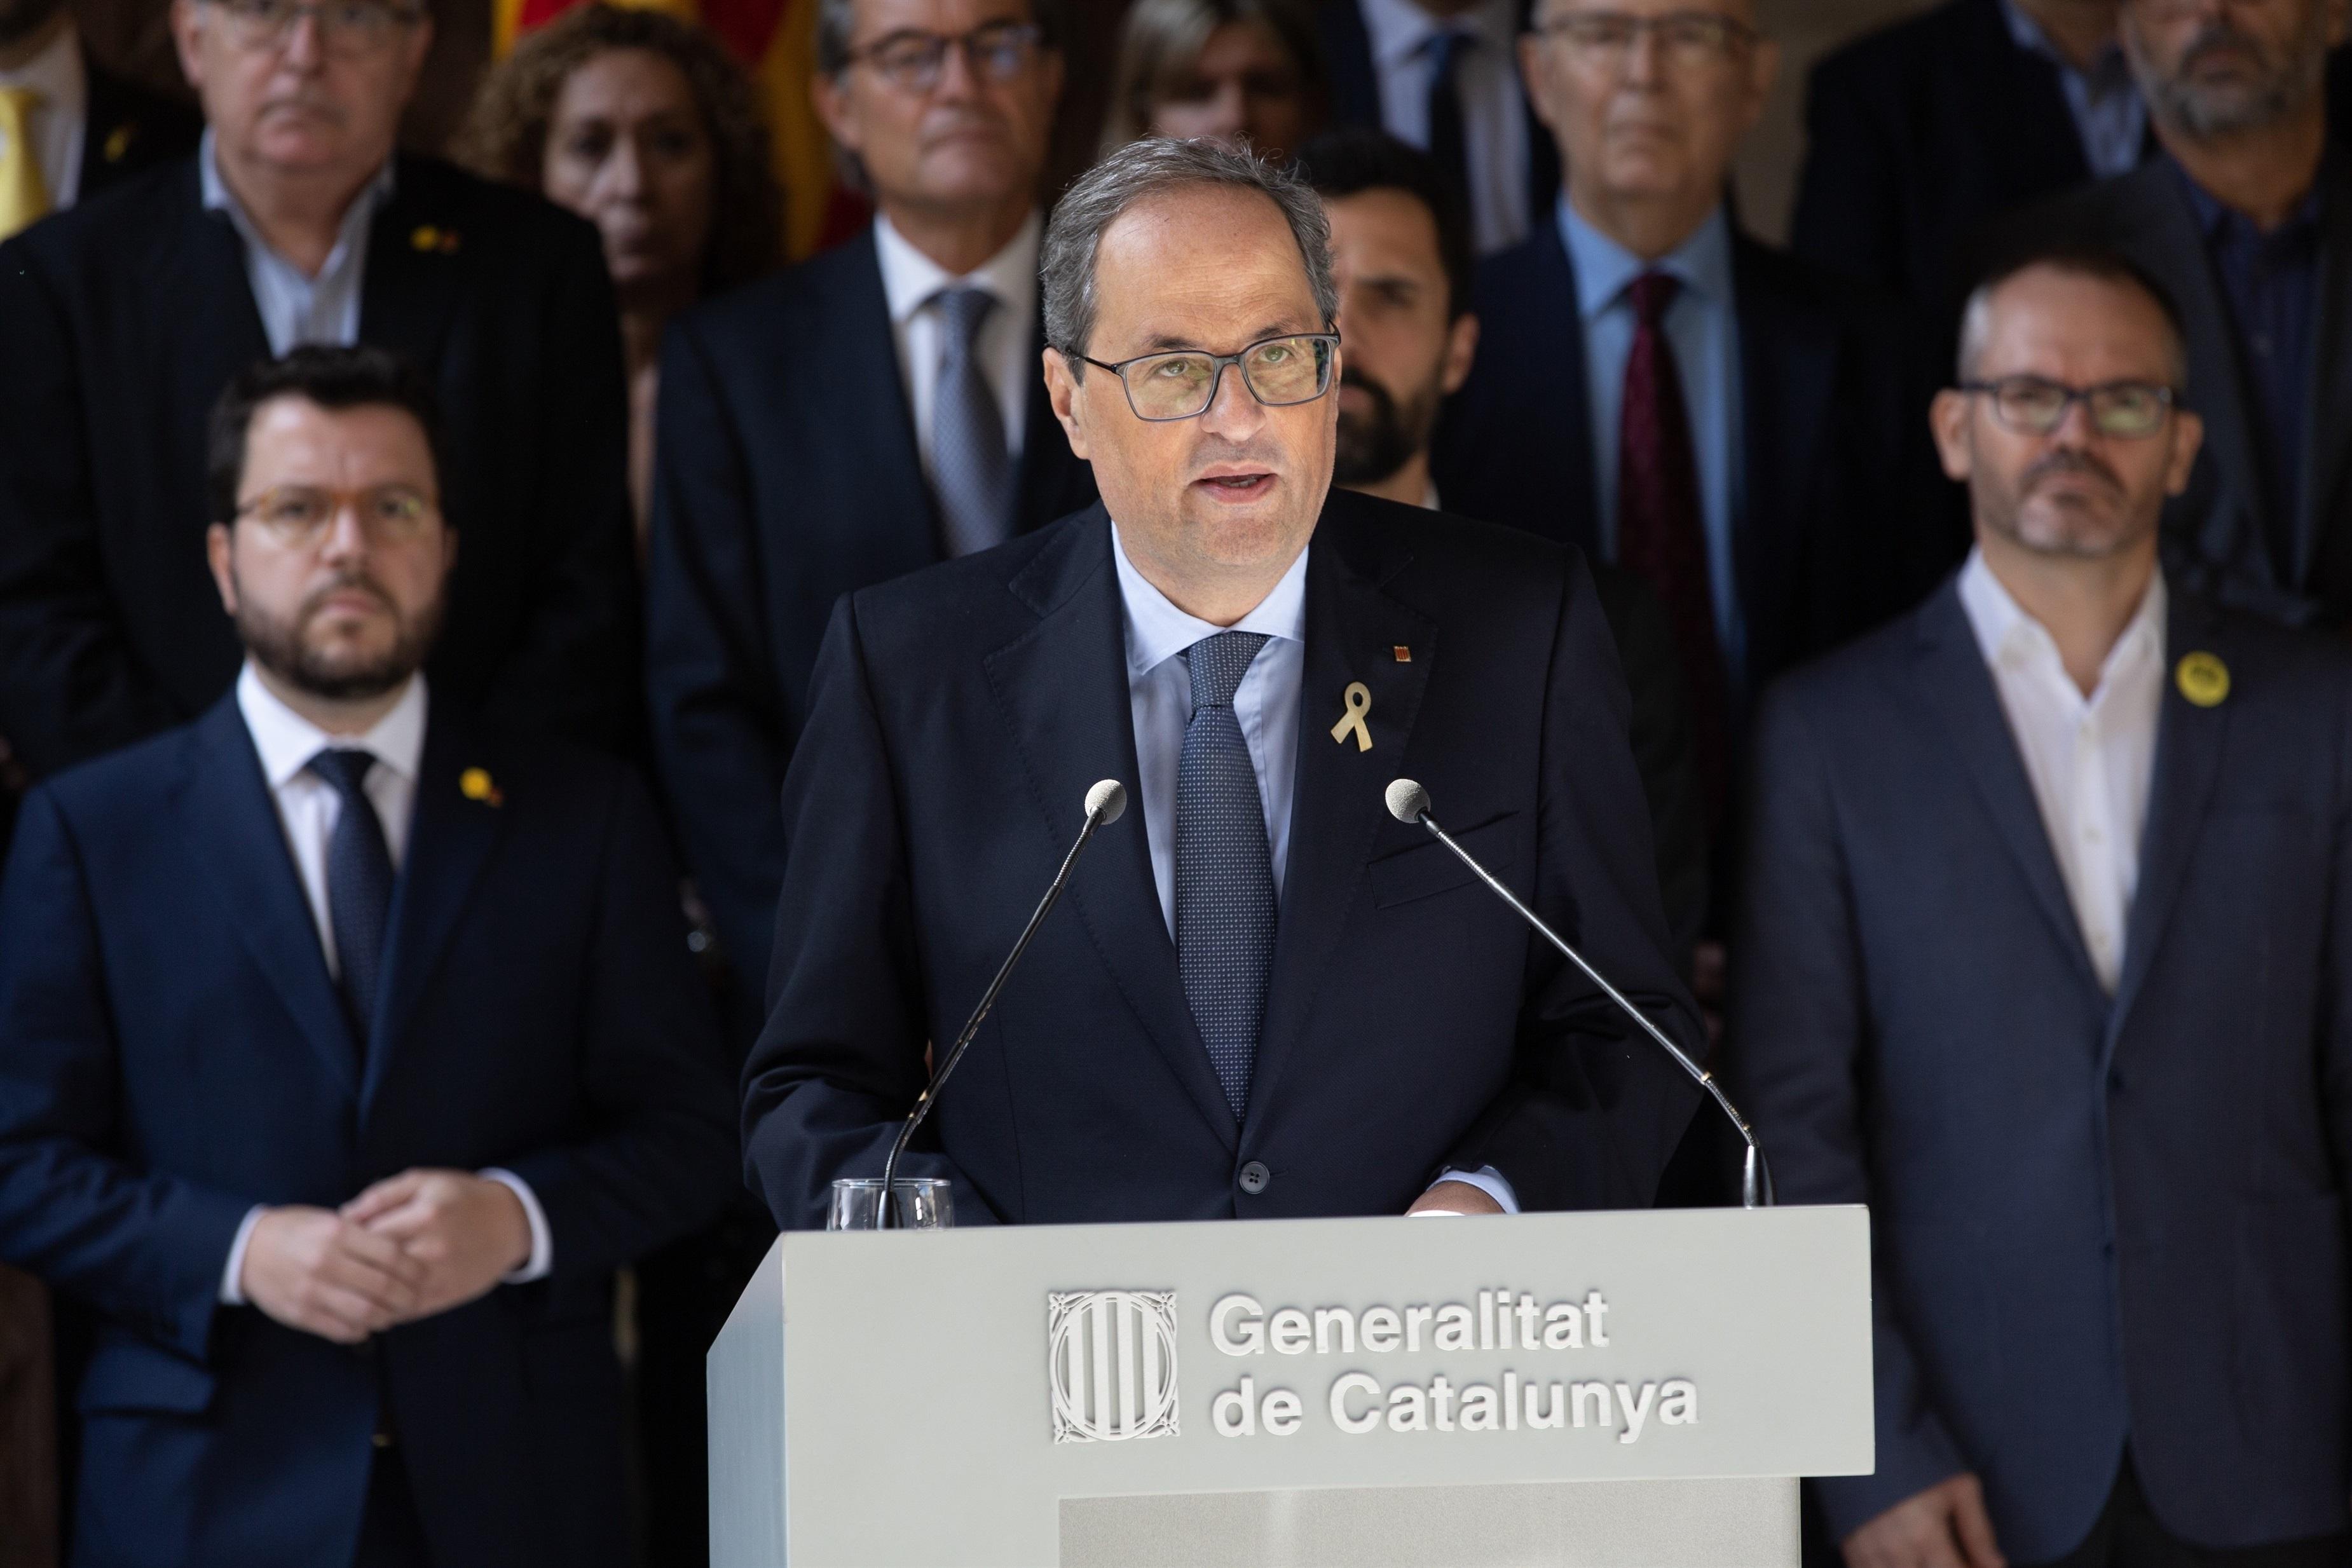 Declaración institucional del presidente de la Generalitat de Catalunya Quim Torra tras la sentencia del proceso independentista. Europa Press.